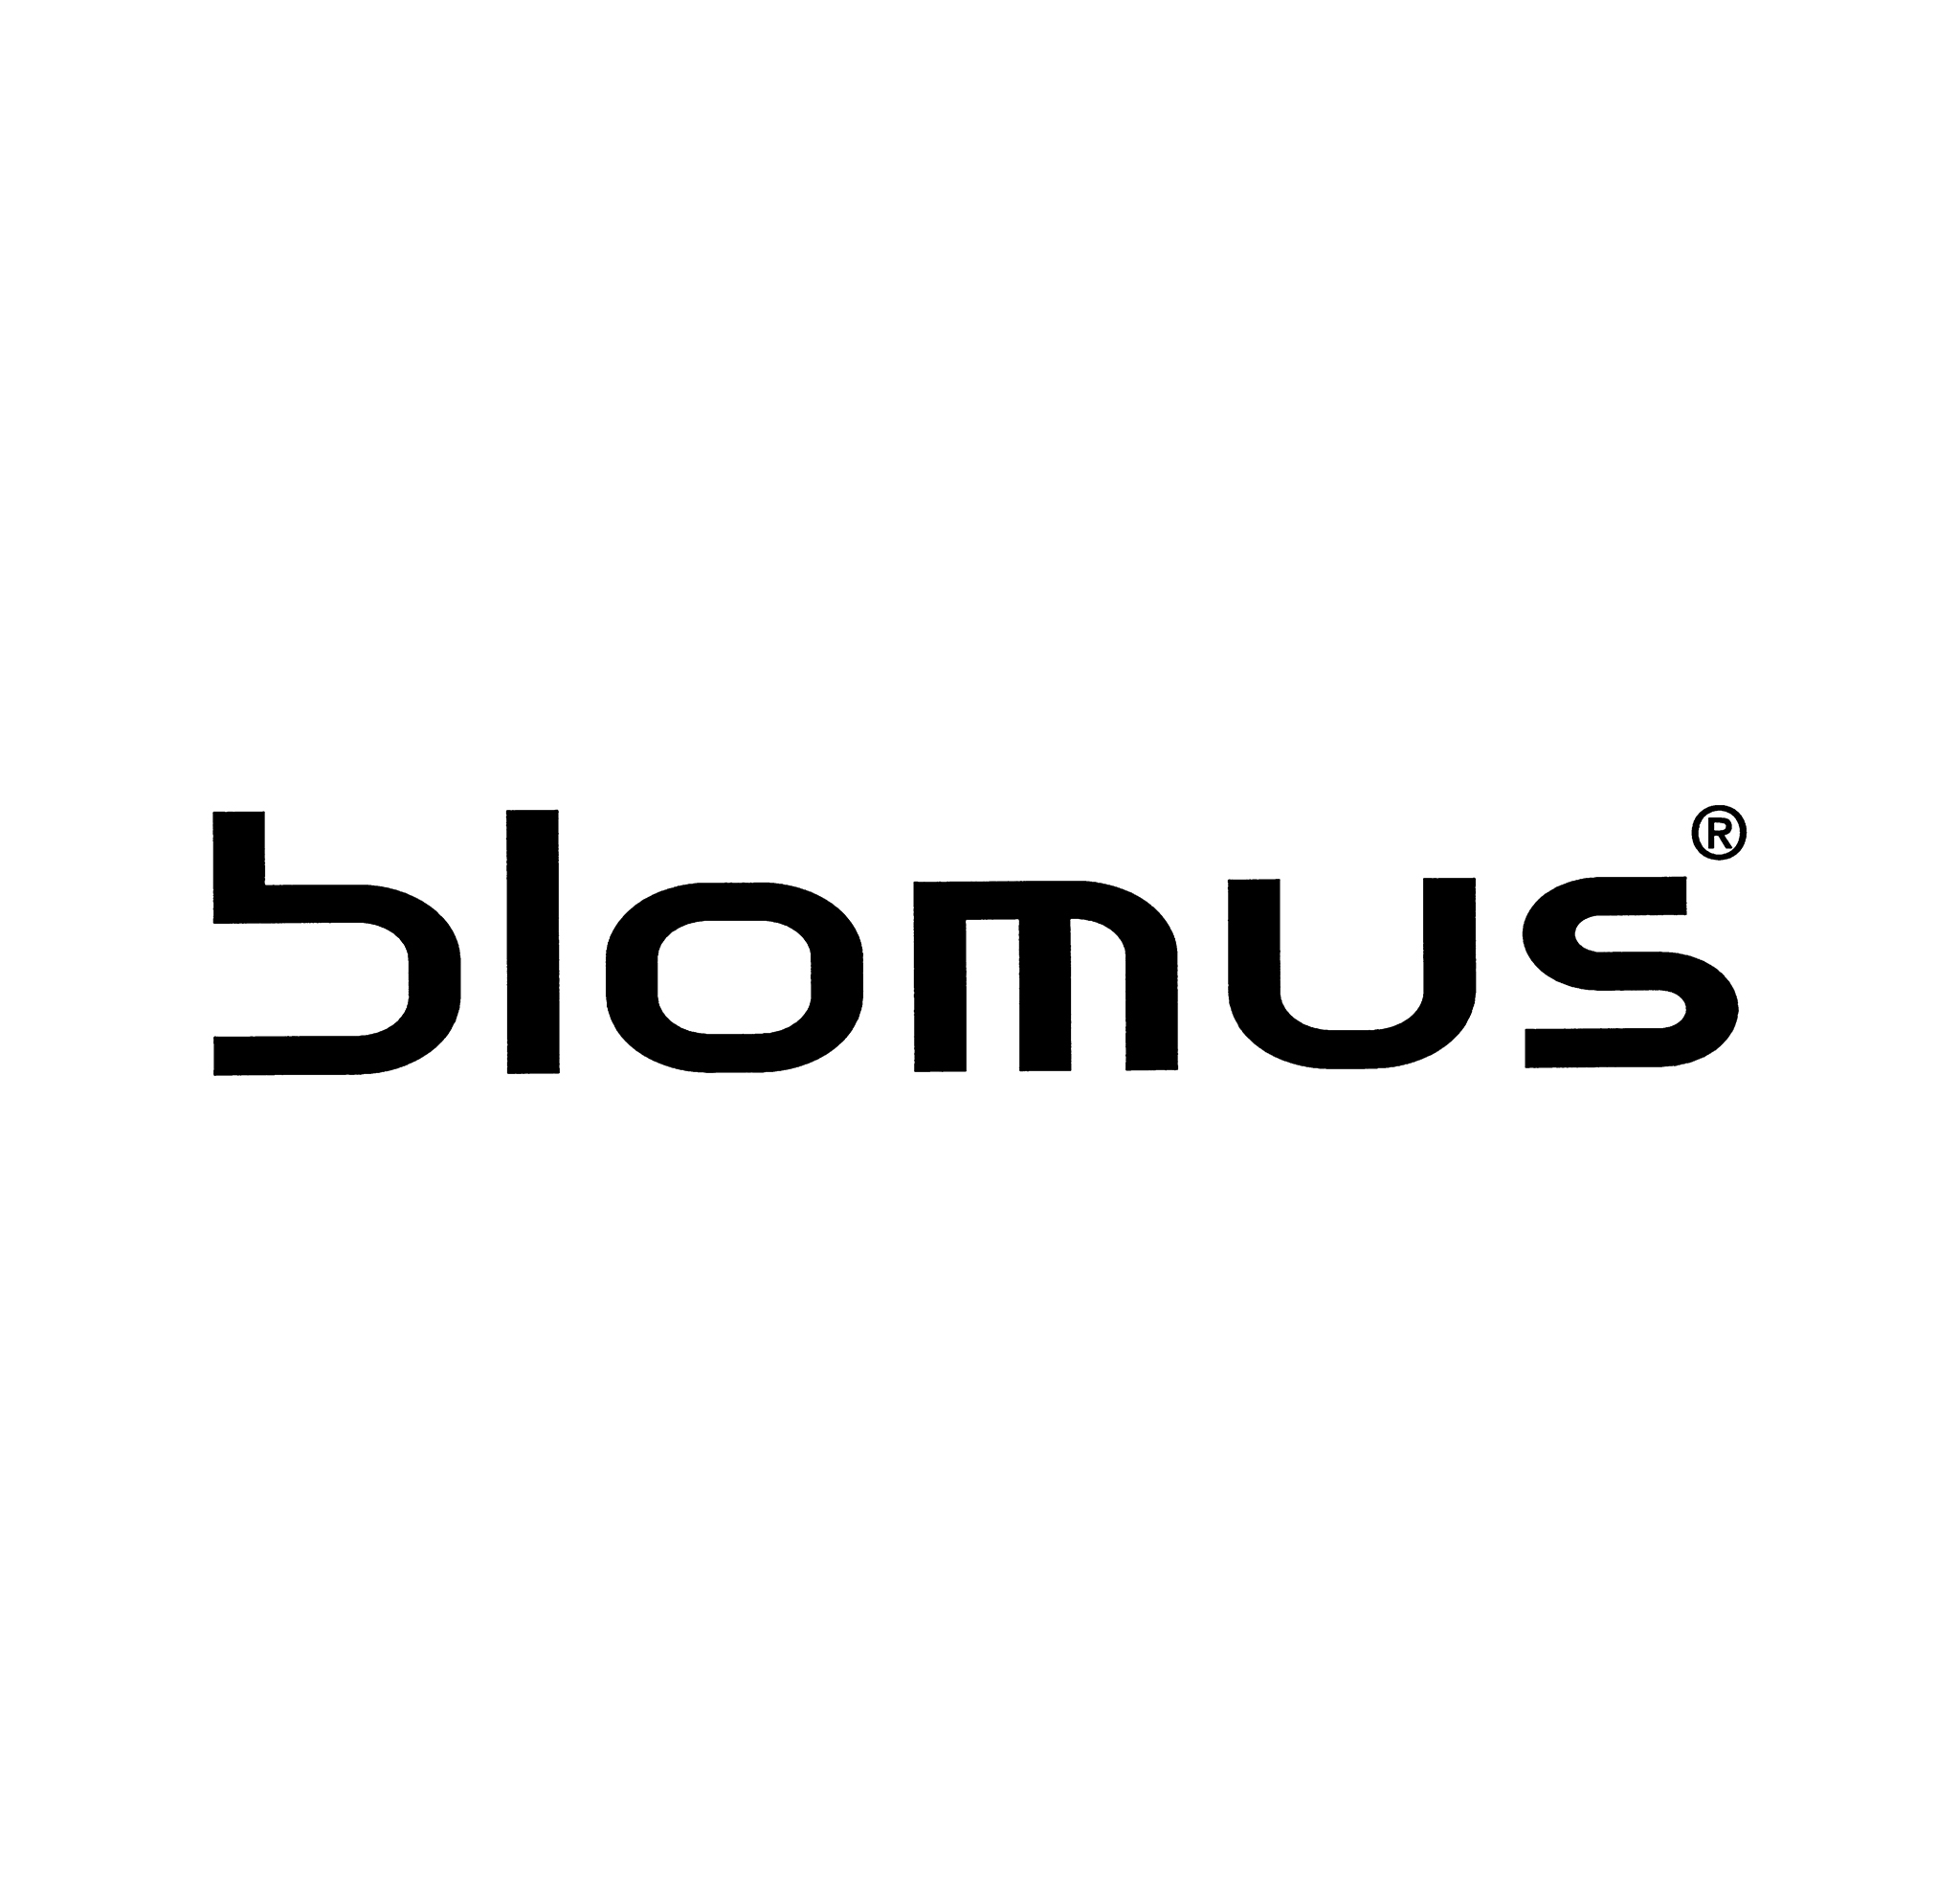 BLOMUS